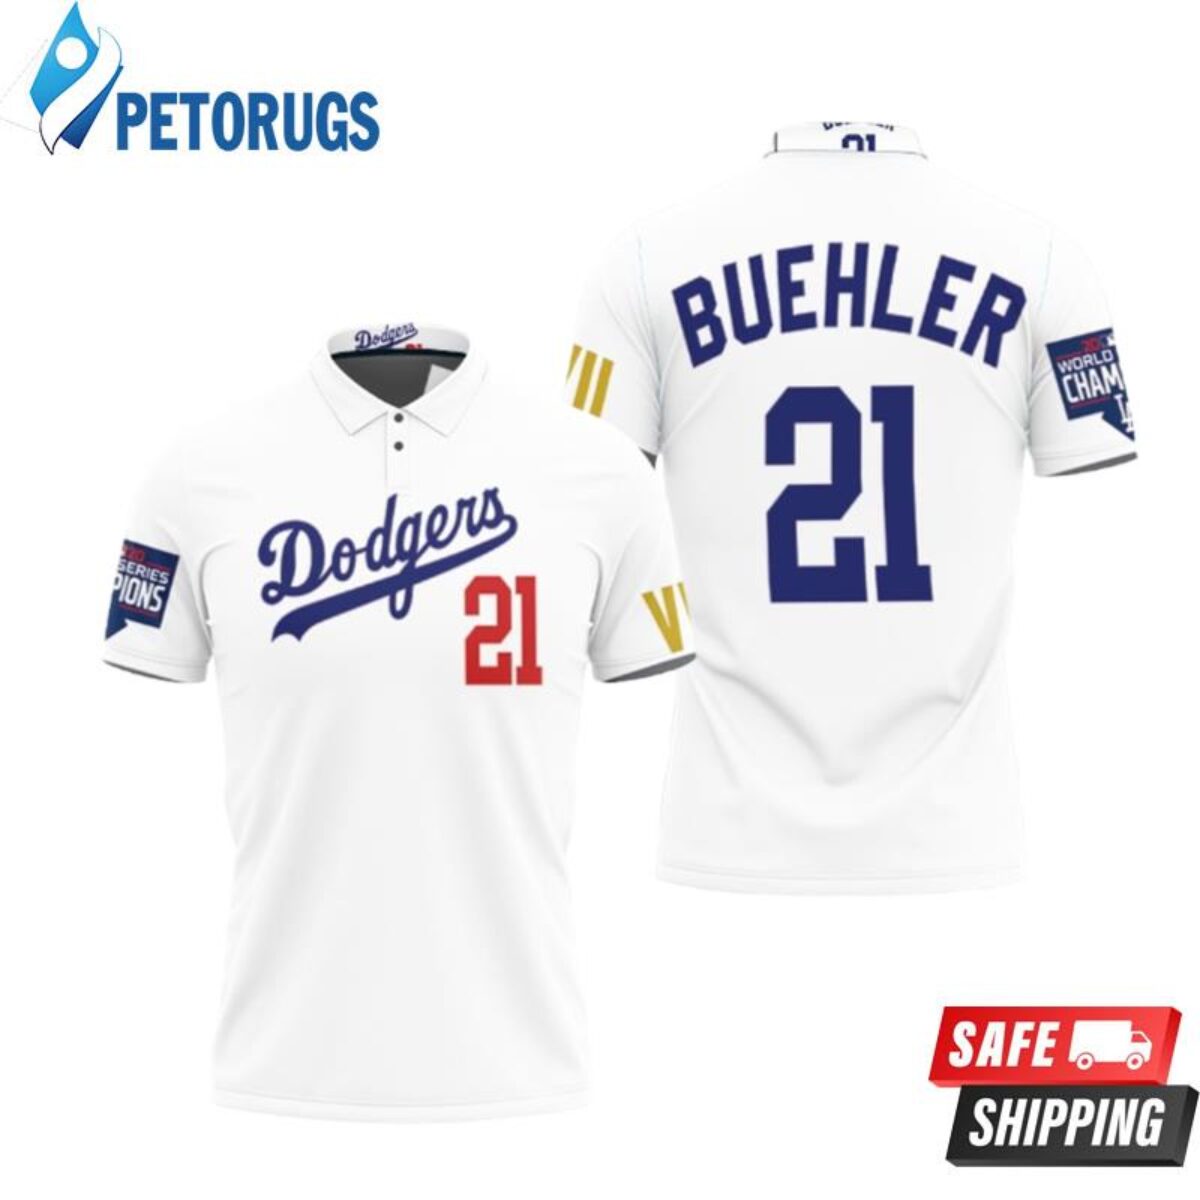 Design Los Angeles Dodgers Buehler 21 2020 Championship Golden